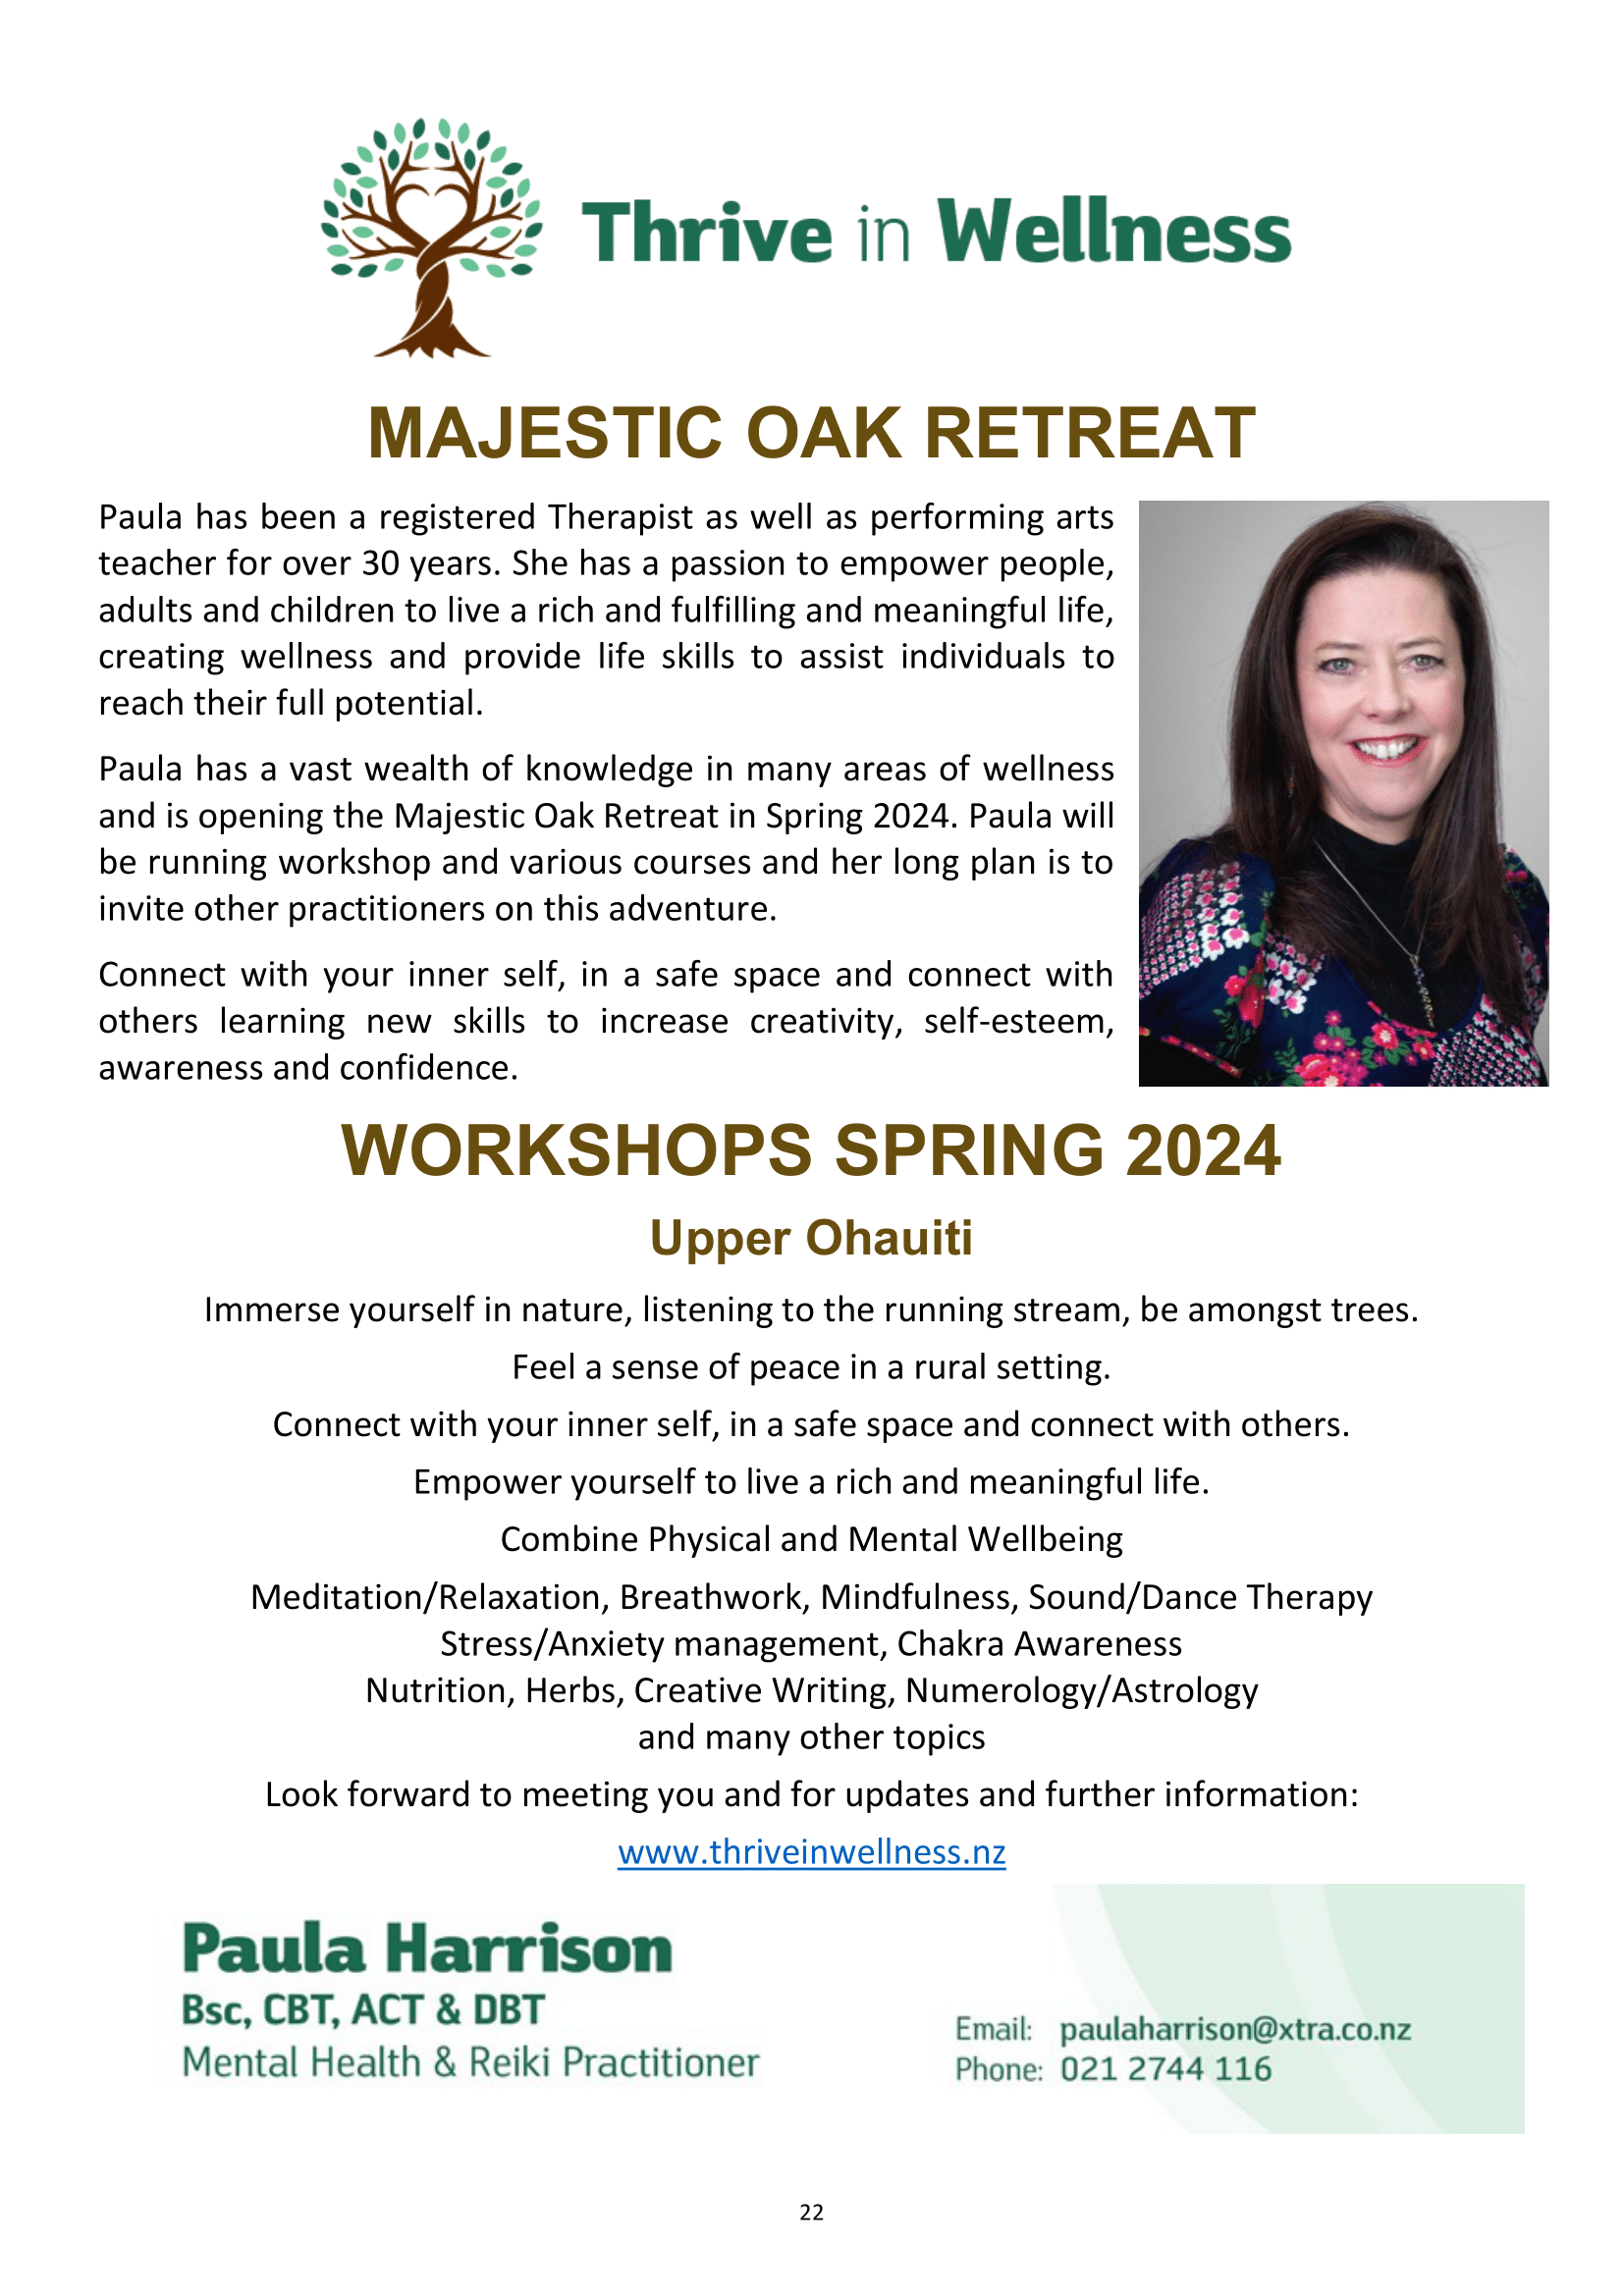 Workshops Spring 2024